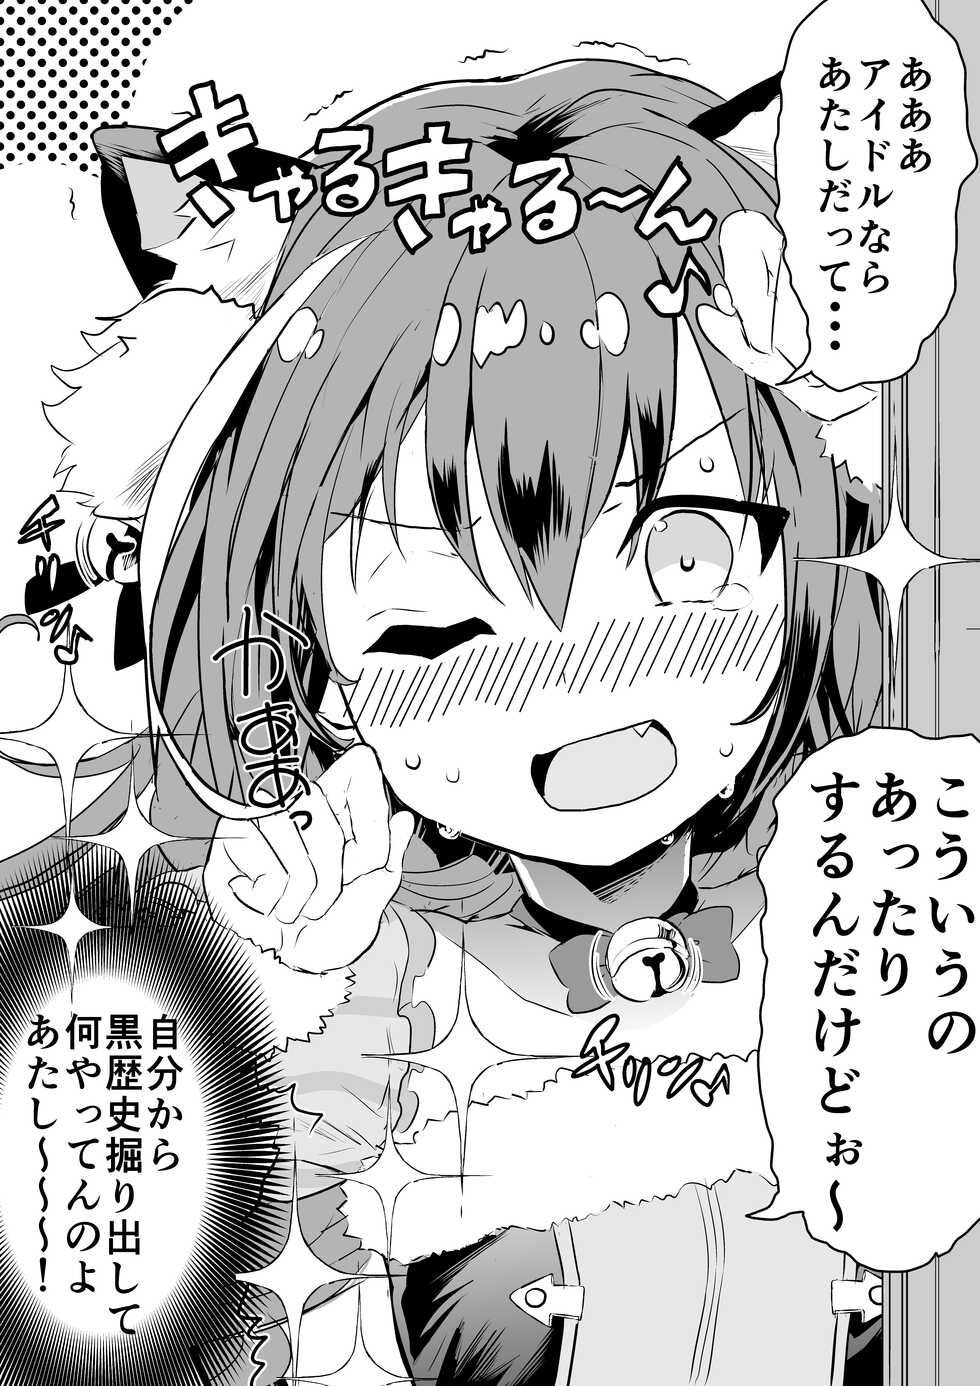 [Kazutaro] Kyaru-chan no Mirare Nagara (Princess Connect! Re:Dive) [Ongoing] - Page 33